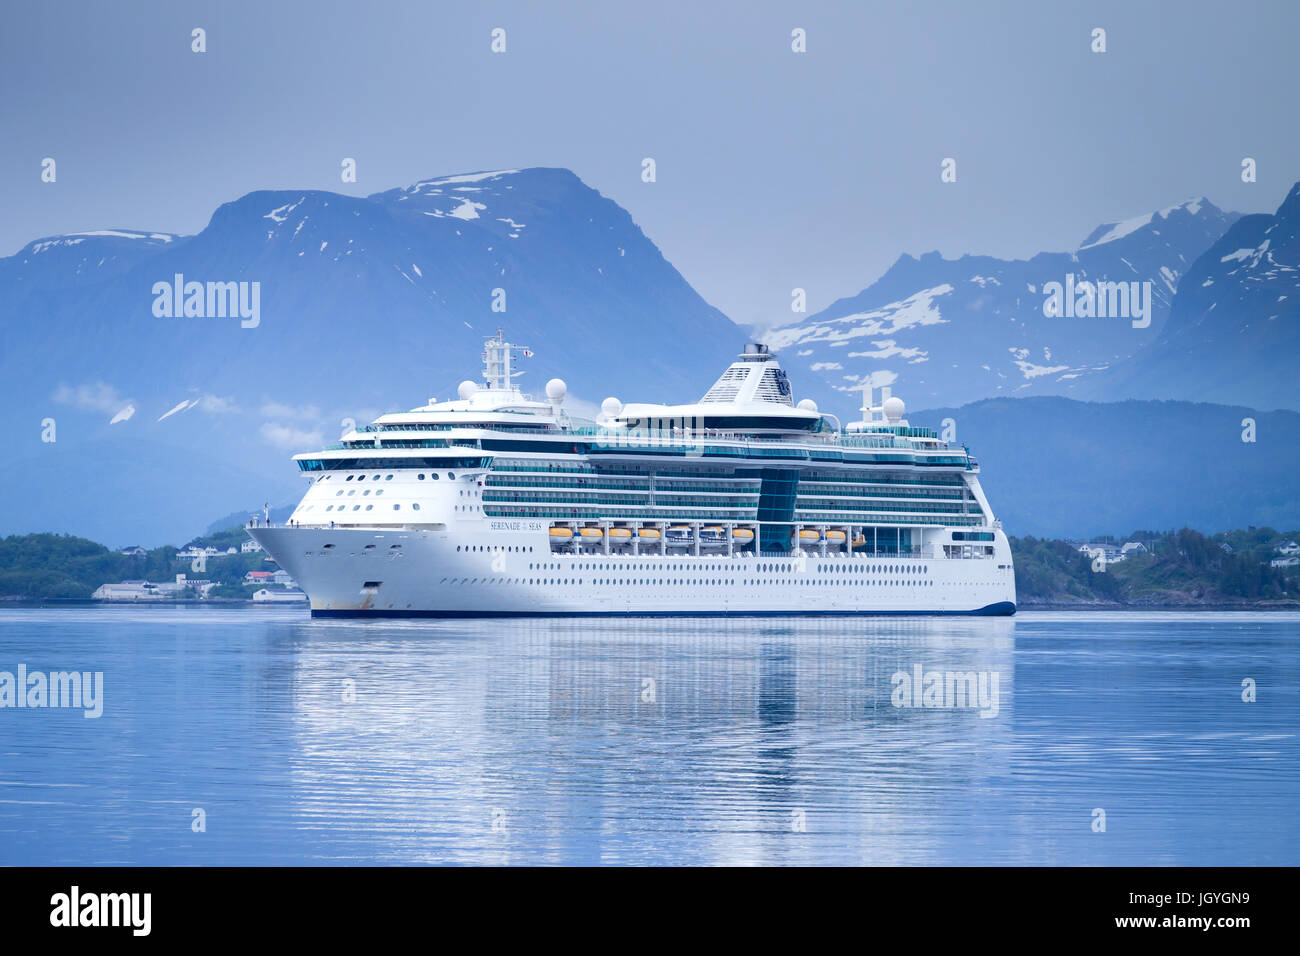 STÄNDCHEN des Meere eingehenden Alesund, ein Kreuzfahrtschiff der Radiance Klasse, die im Besitz und betrieben von Royal Caribbean International Cruise Line. Stockfoto